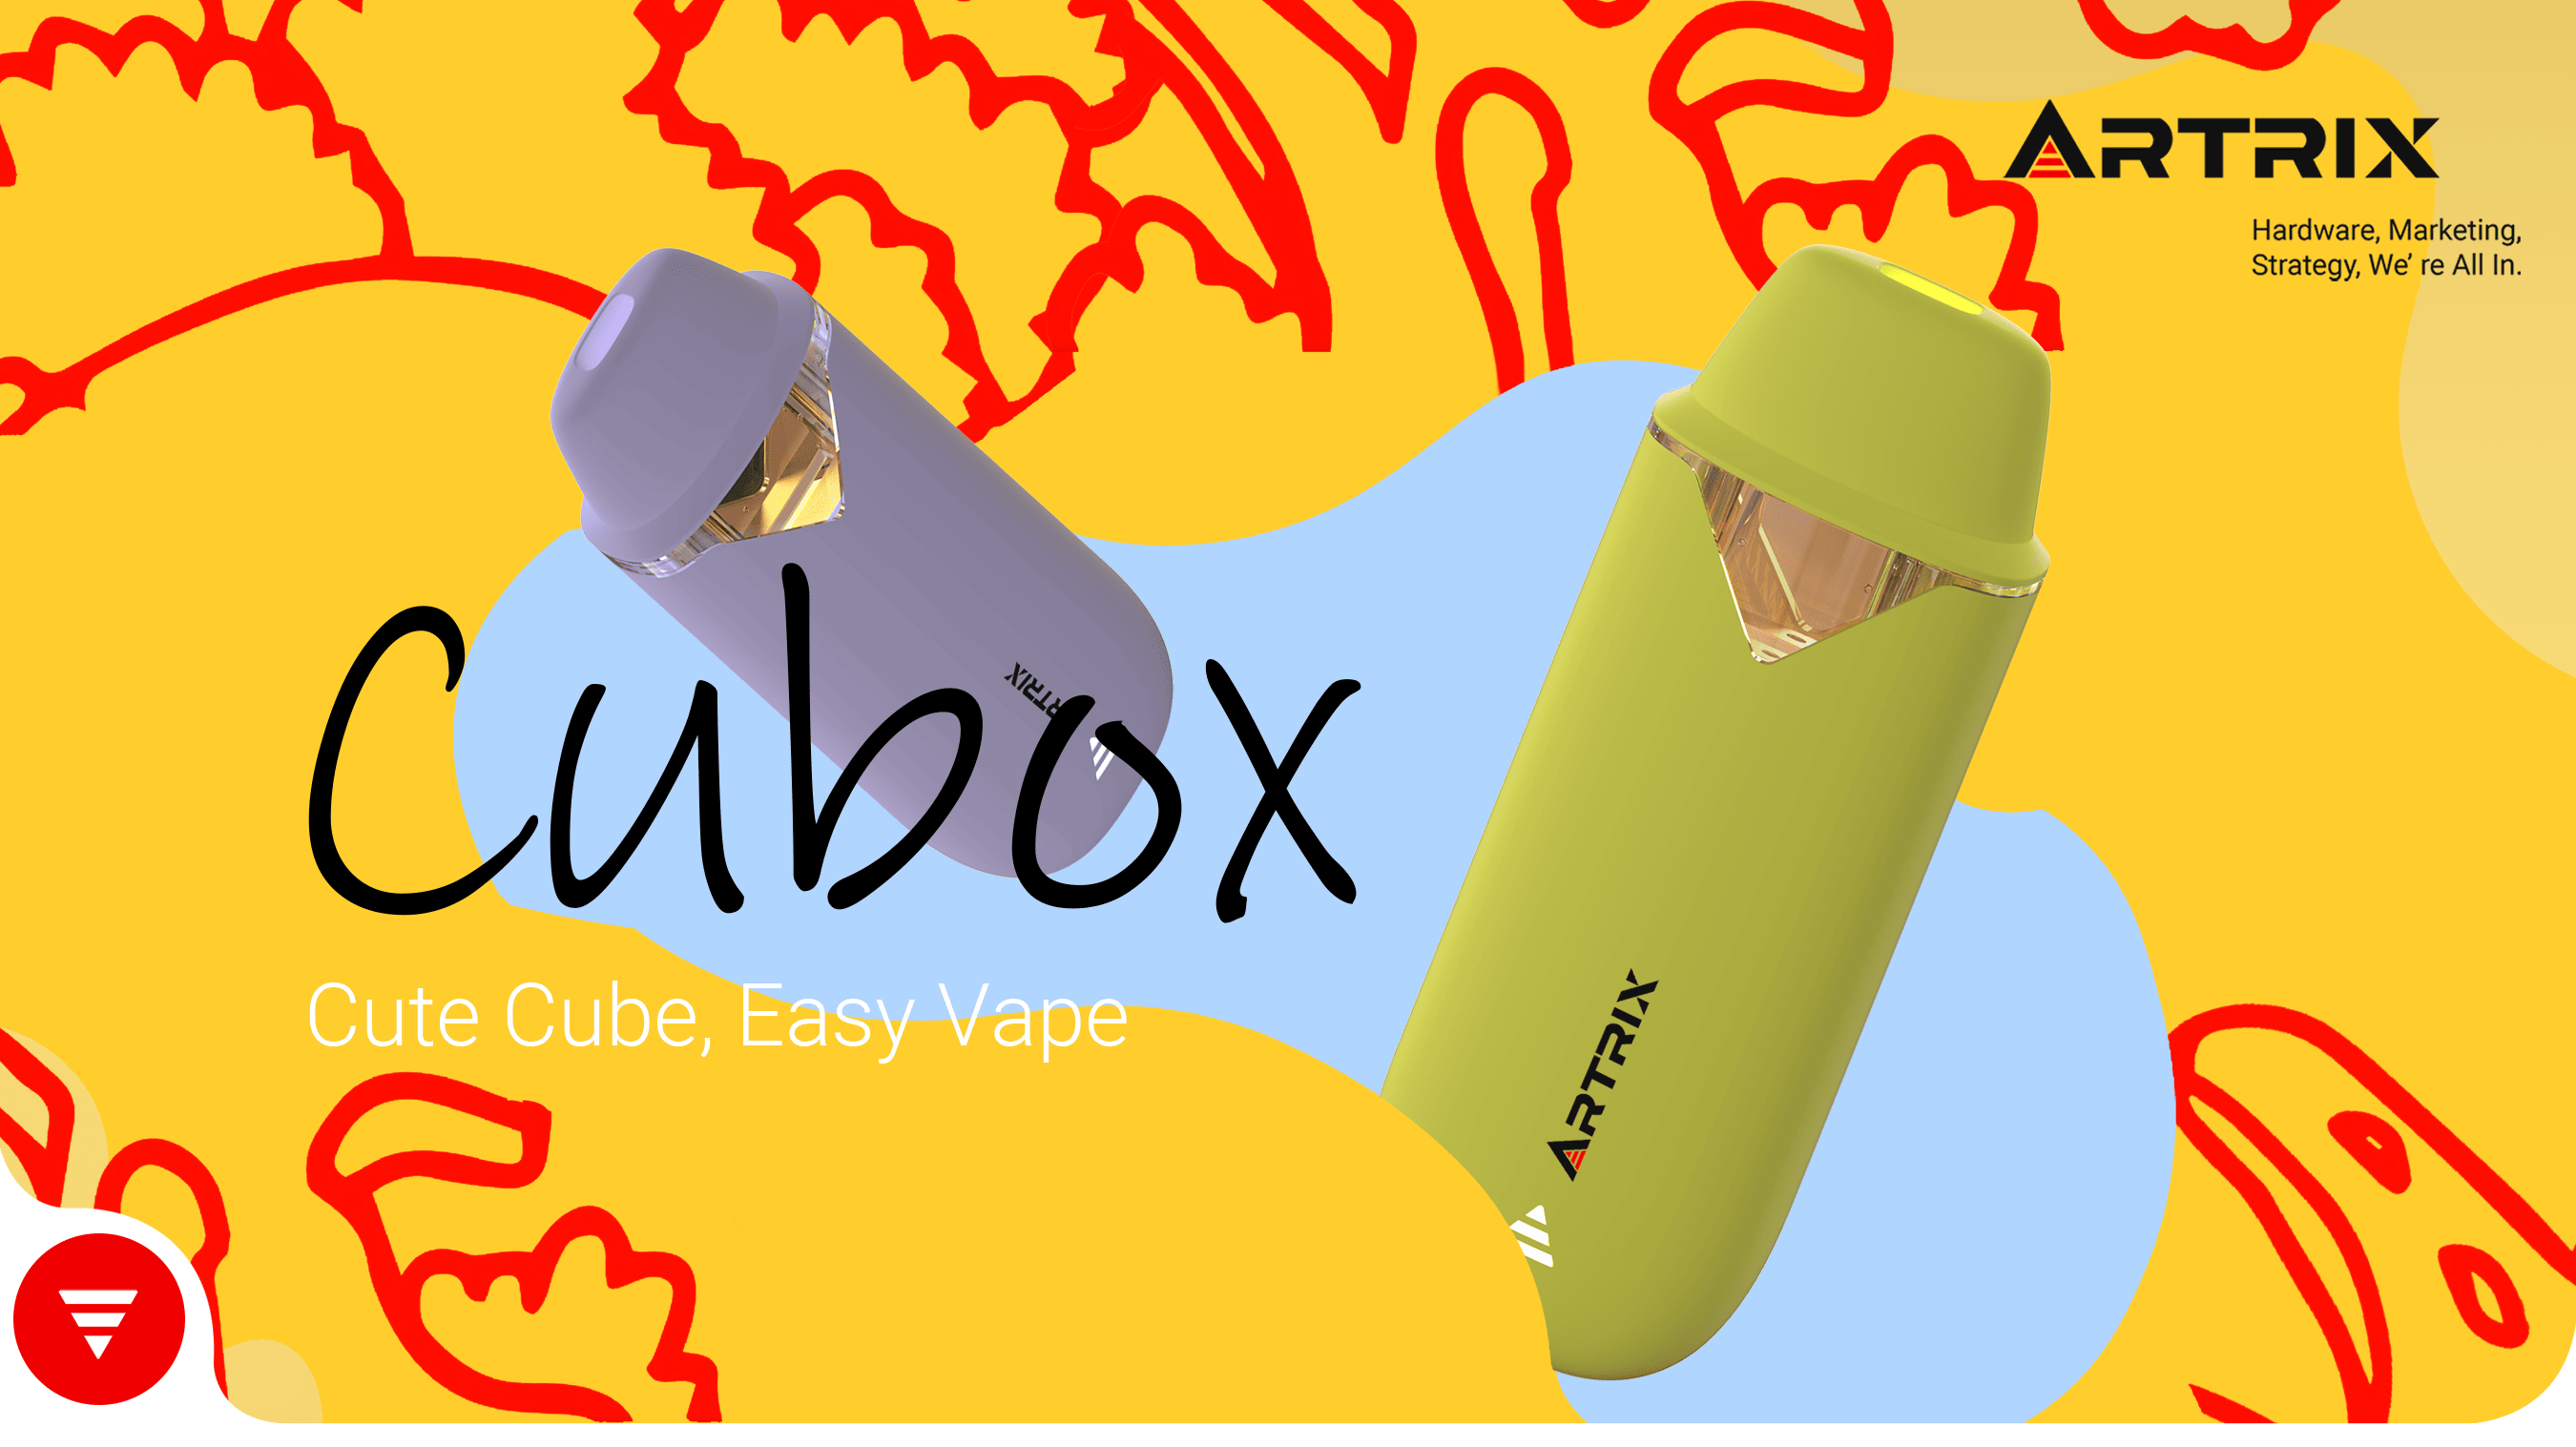 Artrix Cubox Gen z disposable cannabis vape